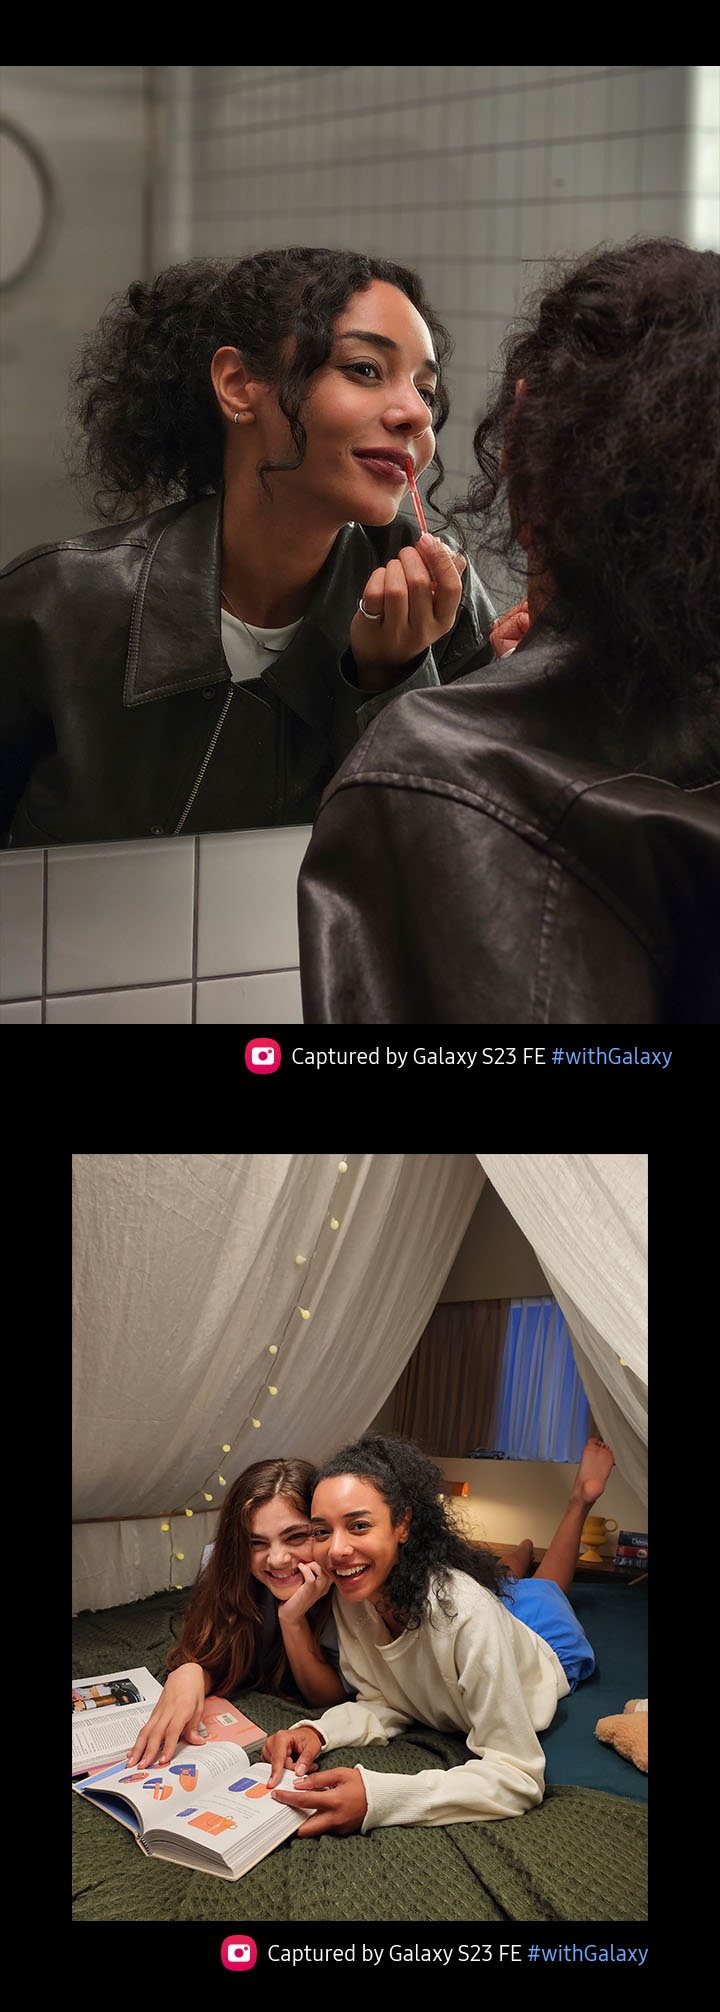 Soldes d'hiver : la folle promotion du dernier Samsung Galaxy S23 FE !